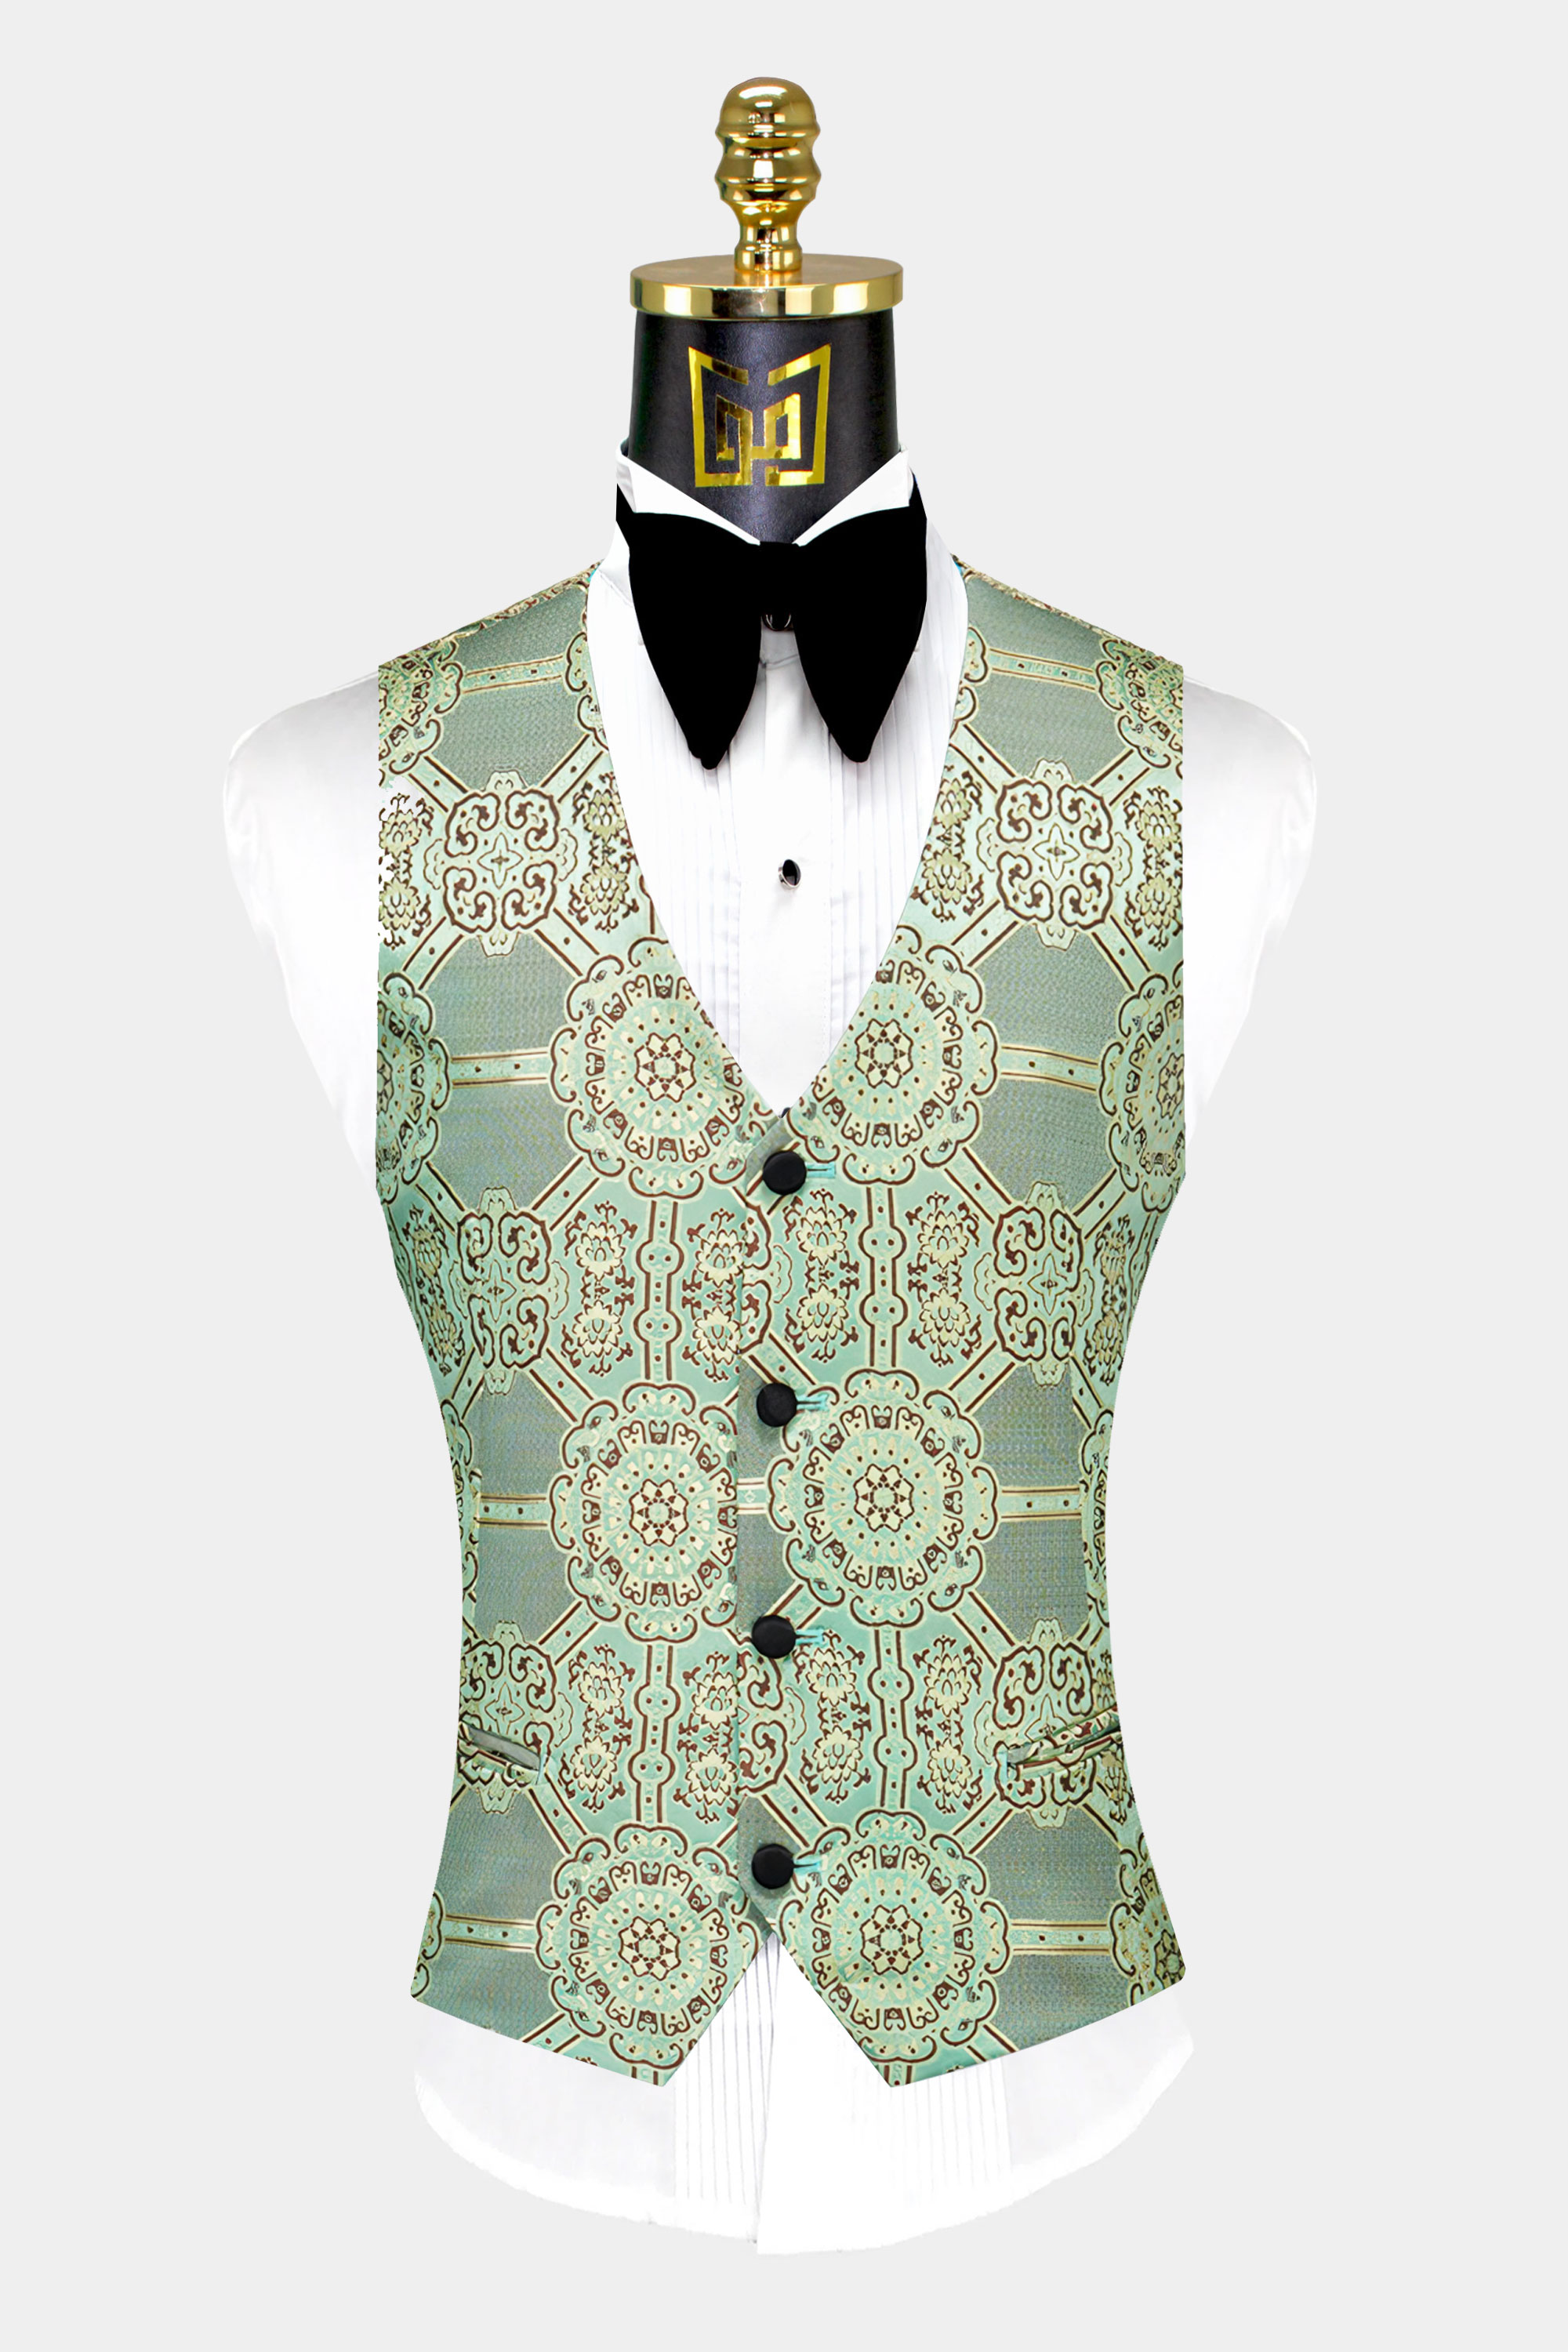 Mint-Green-Tuxedo-Vest-from-Gentlemansguru.com